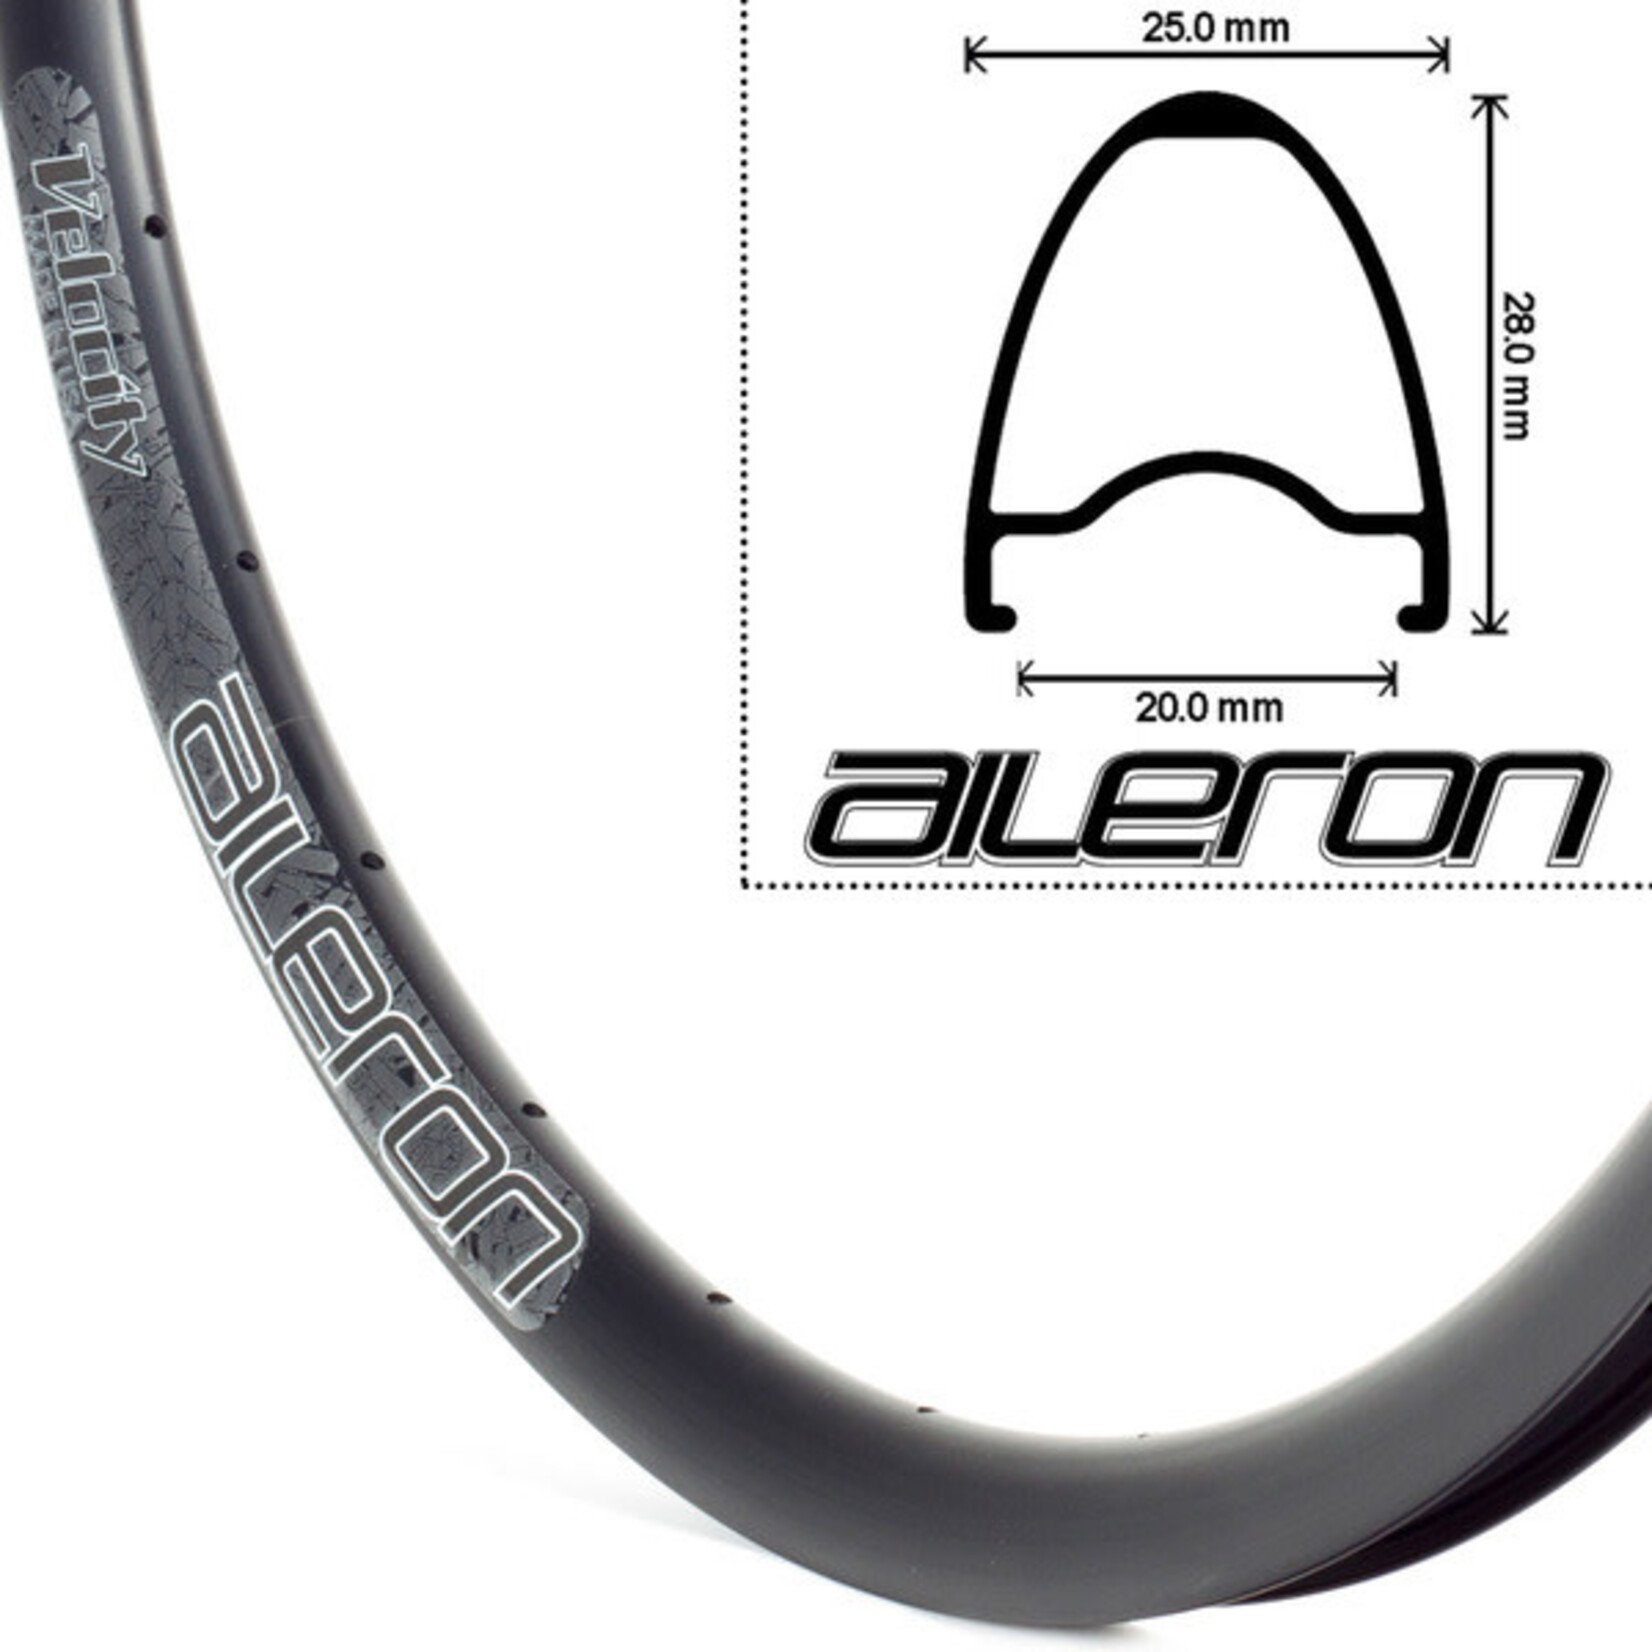 Velocity Velocity Aileron 700c Bicycle Rims - Black,28